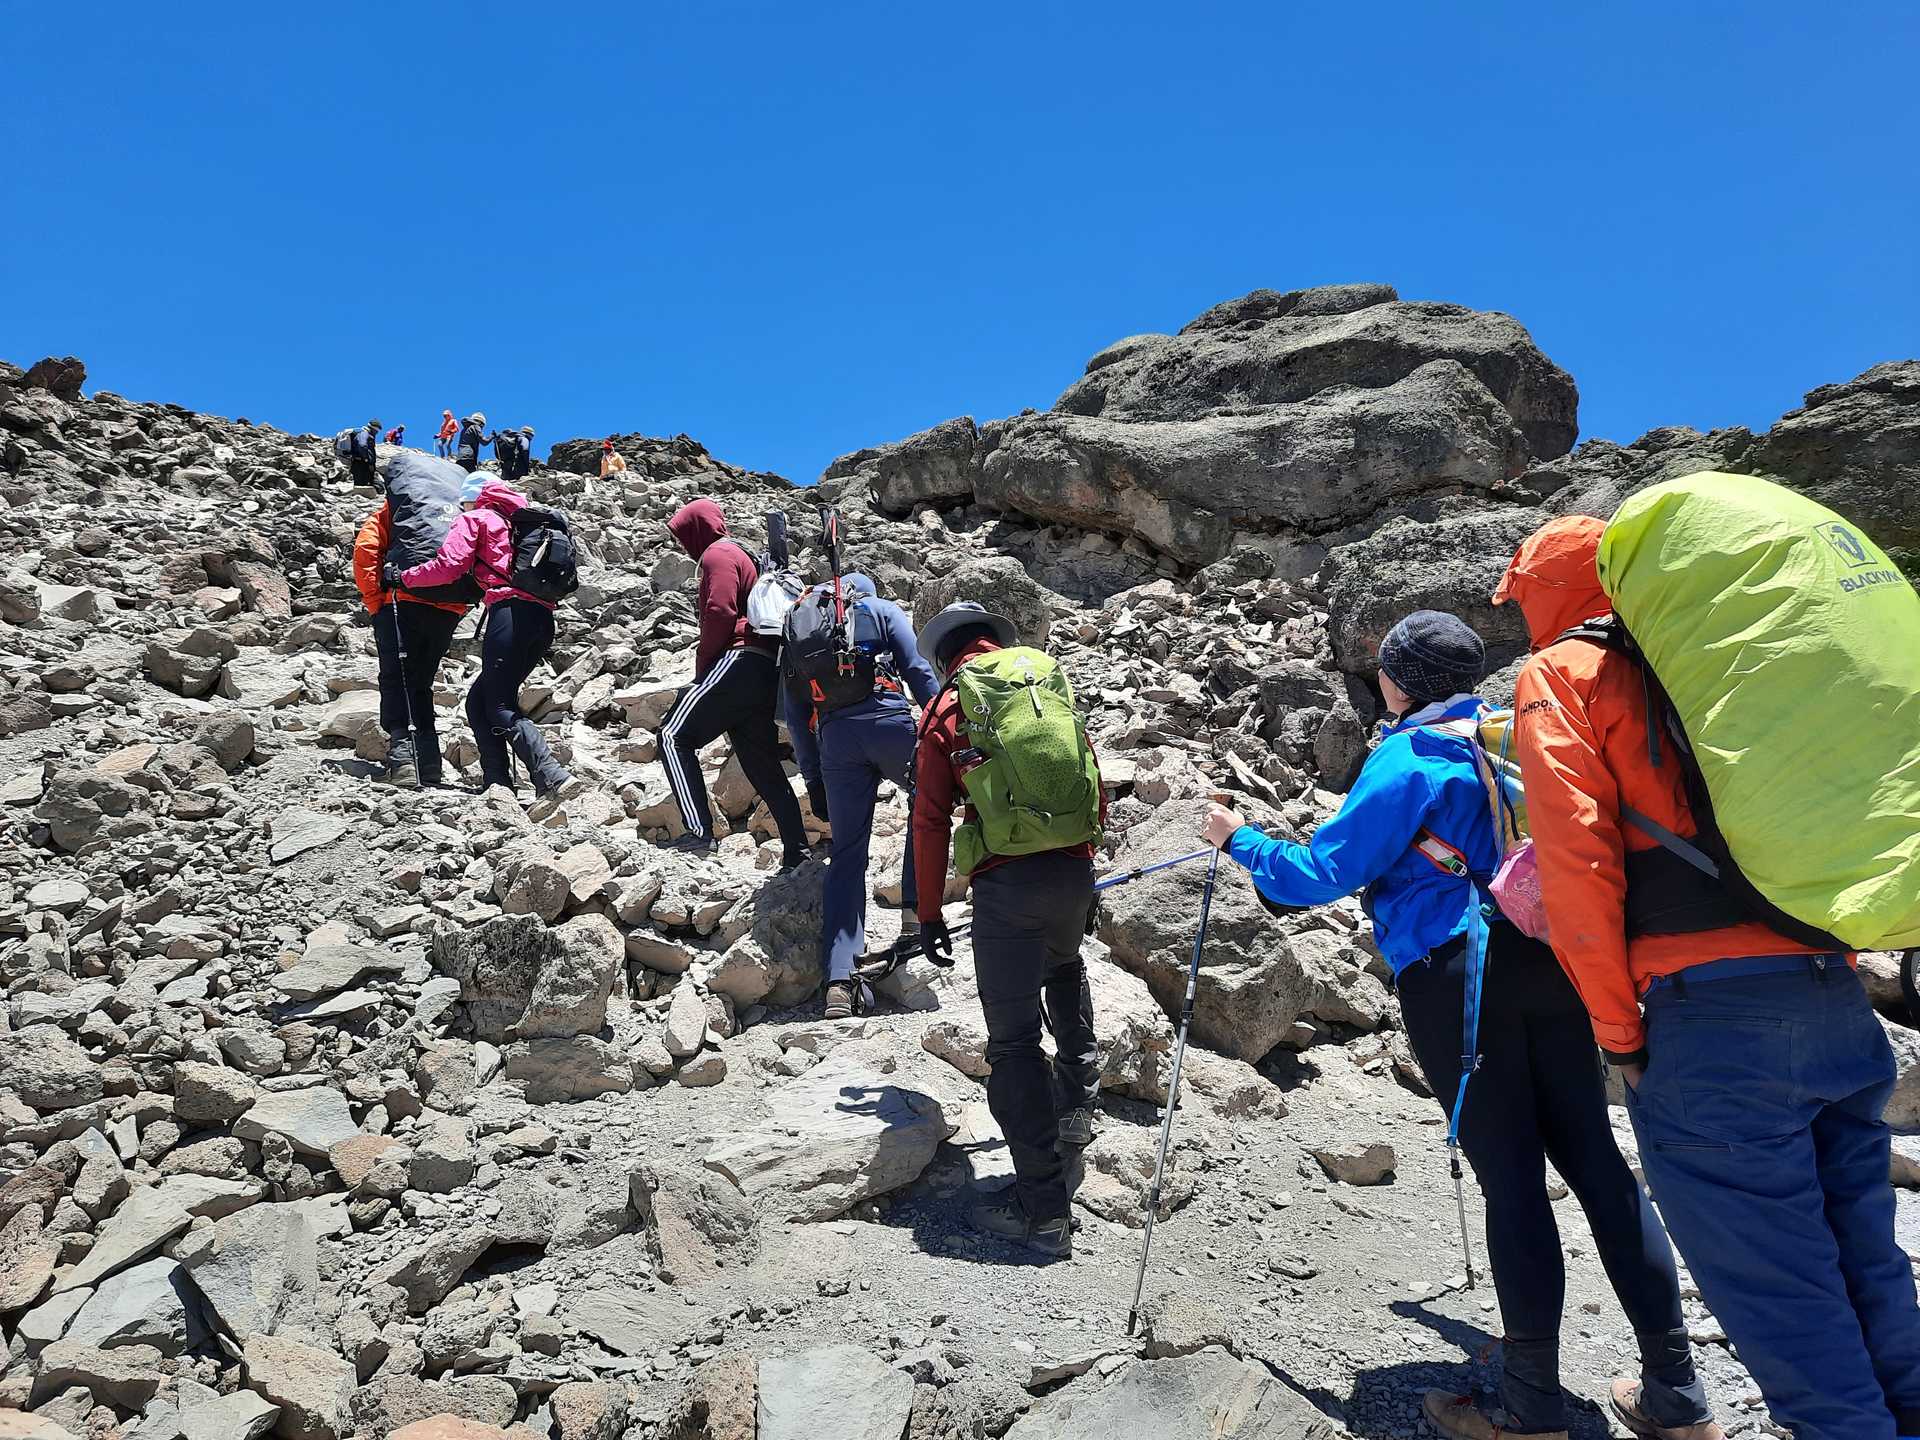 Kandoo guides and climbers on Kilimanjaro